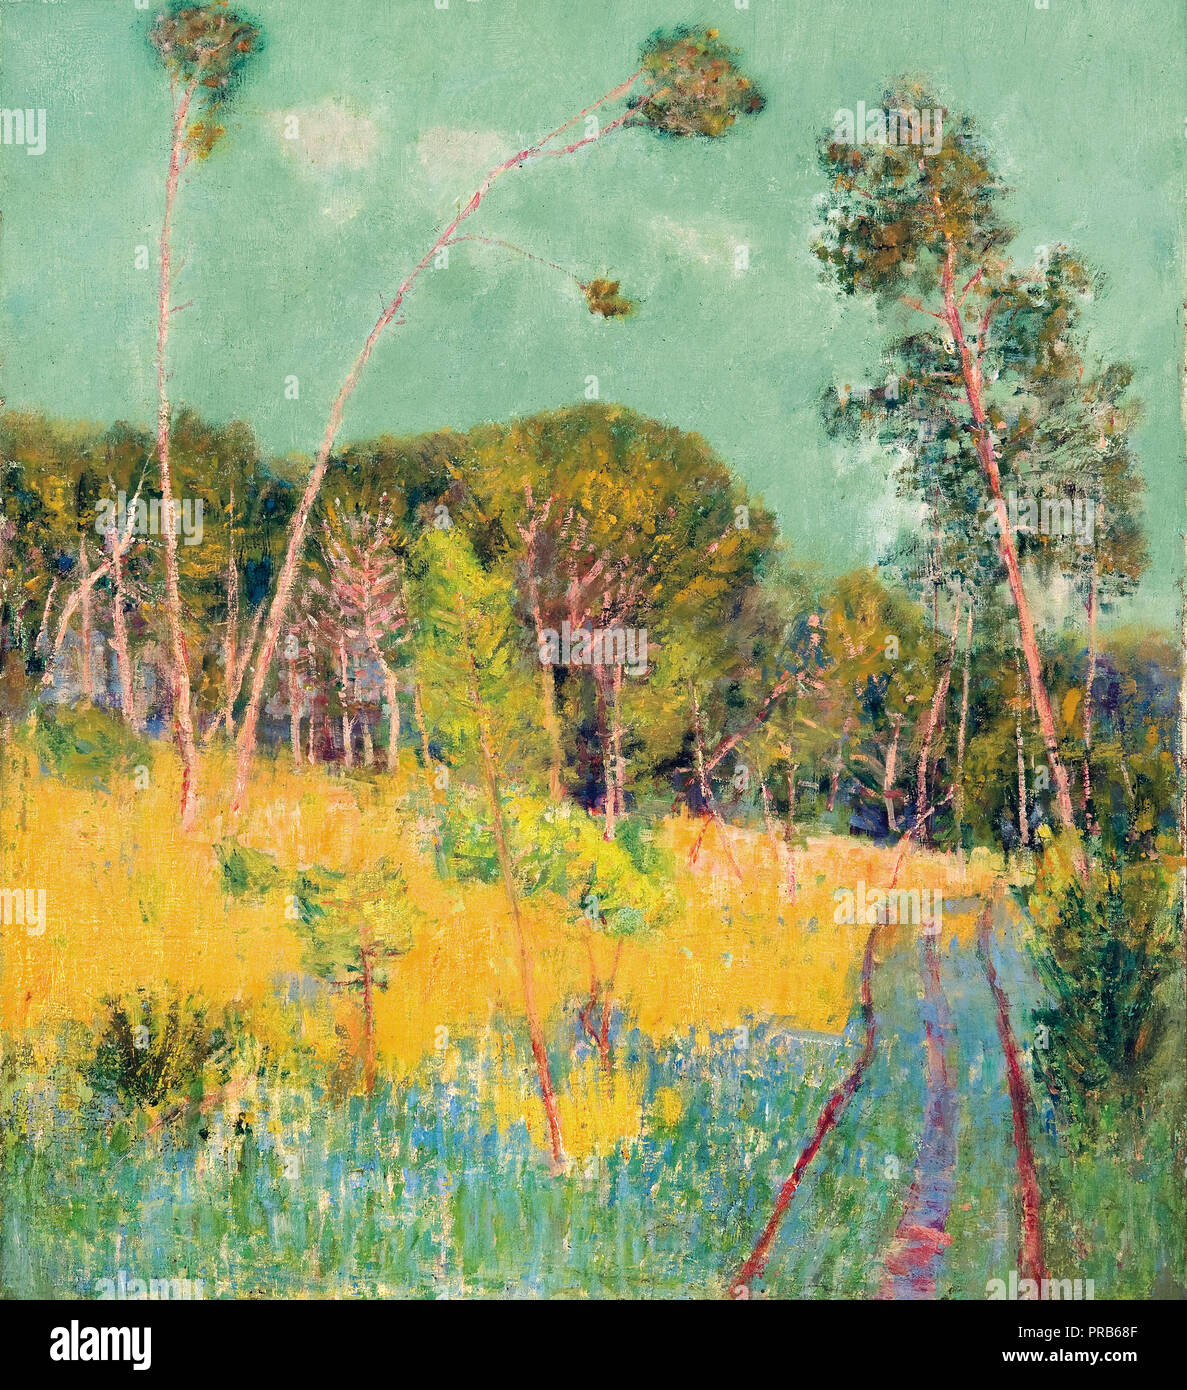 John Peter Russell, une clairière dans la forêt 1891 huile sur toile, Musée des beaux-arts de l'Australie du Sud. Banque D'Images